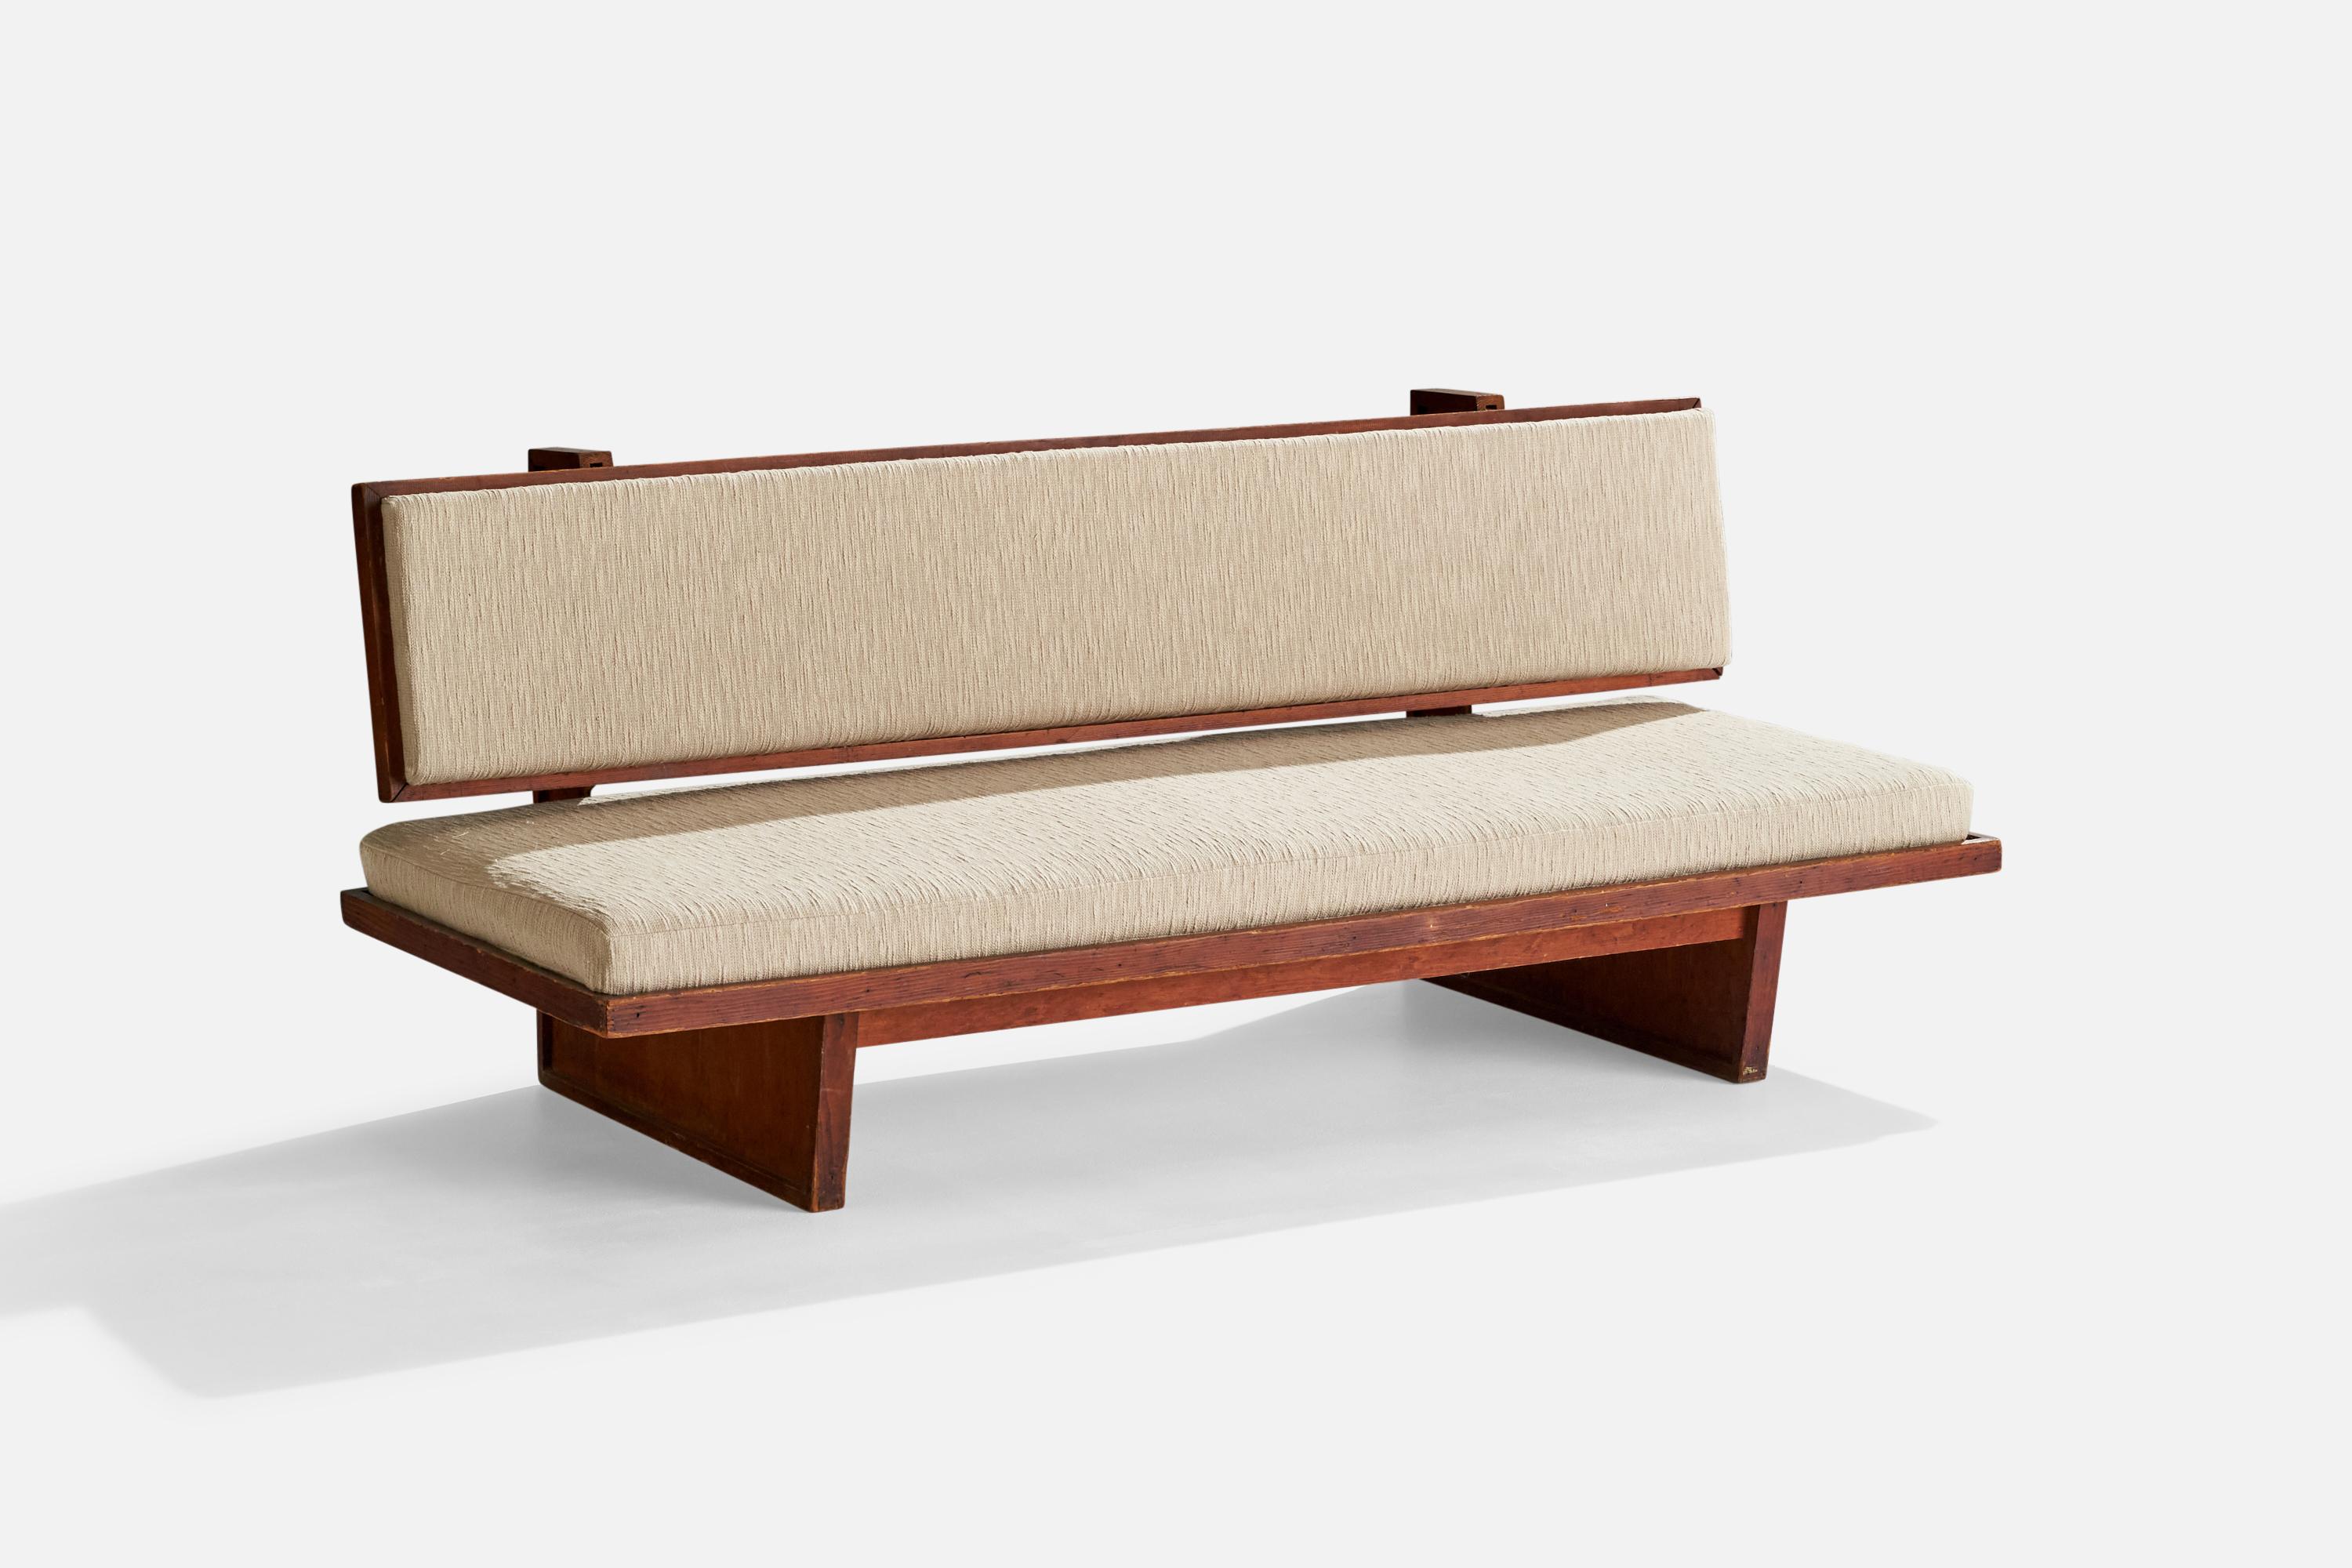 Eine Bank oder ein Sofa aus gebeizter Eiche und cremefarbenem Stoff, entworfen und hergestellt in den USA, ca. 1940er Jahre.

Sitzhöhe 14,5